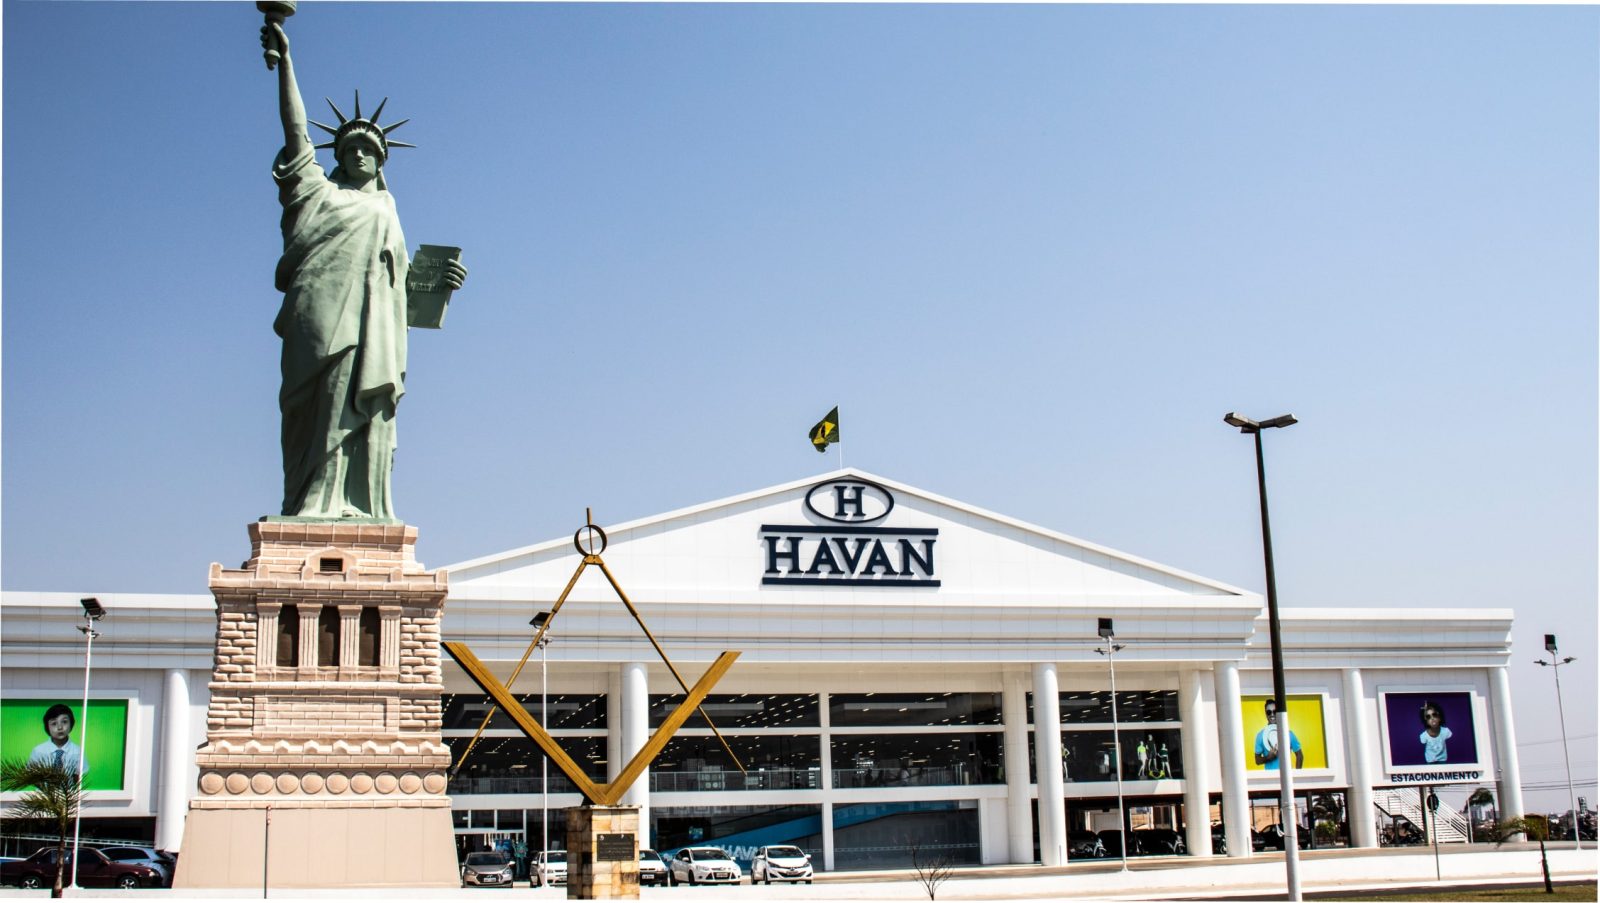 Fachada de uma das lojas HAVAN, com uma réplica da estátua da liberdade